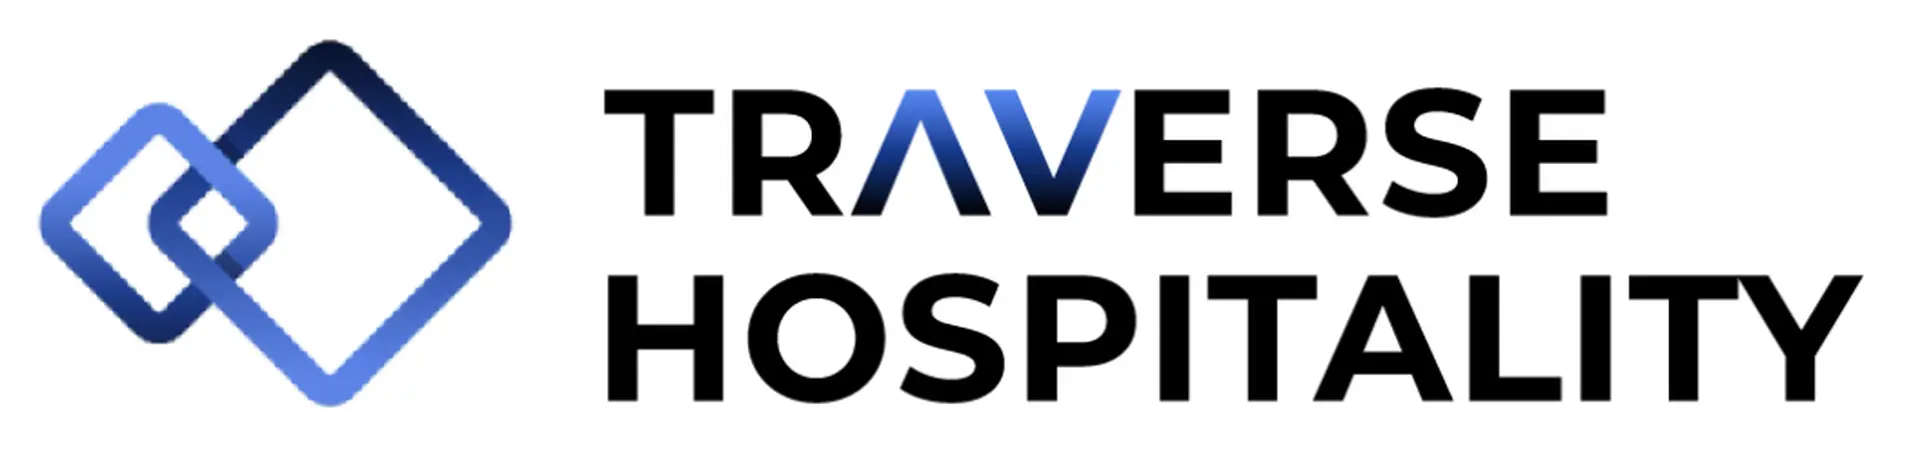 traversehospitality logo